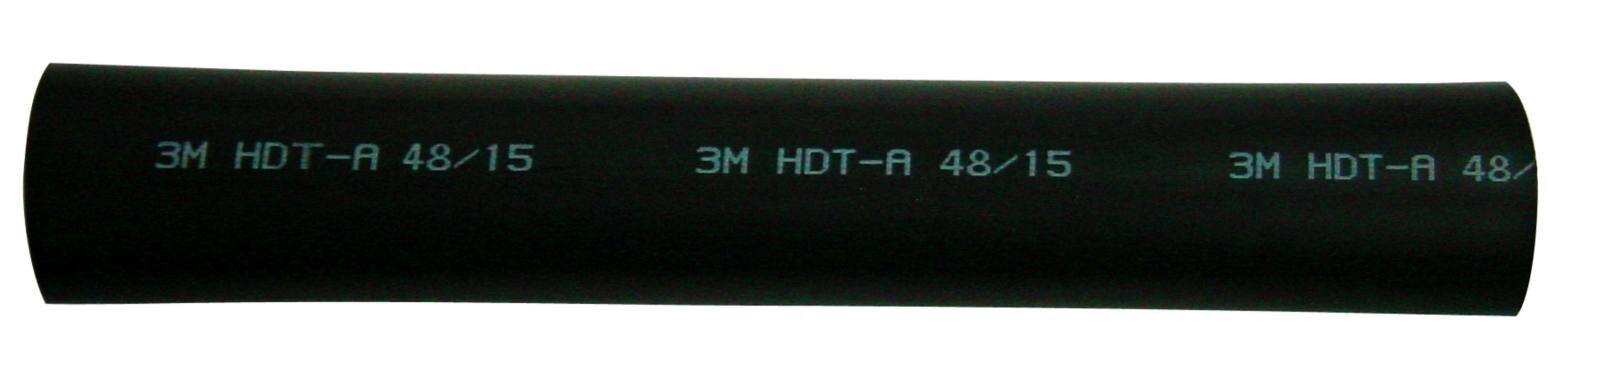 3M HDT-A Tubo termorestringente a parete spessa con adesivo, nero, 12/3 mm, 1 m